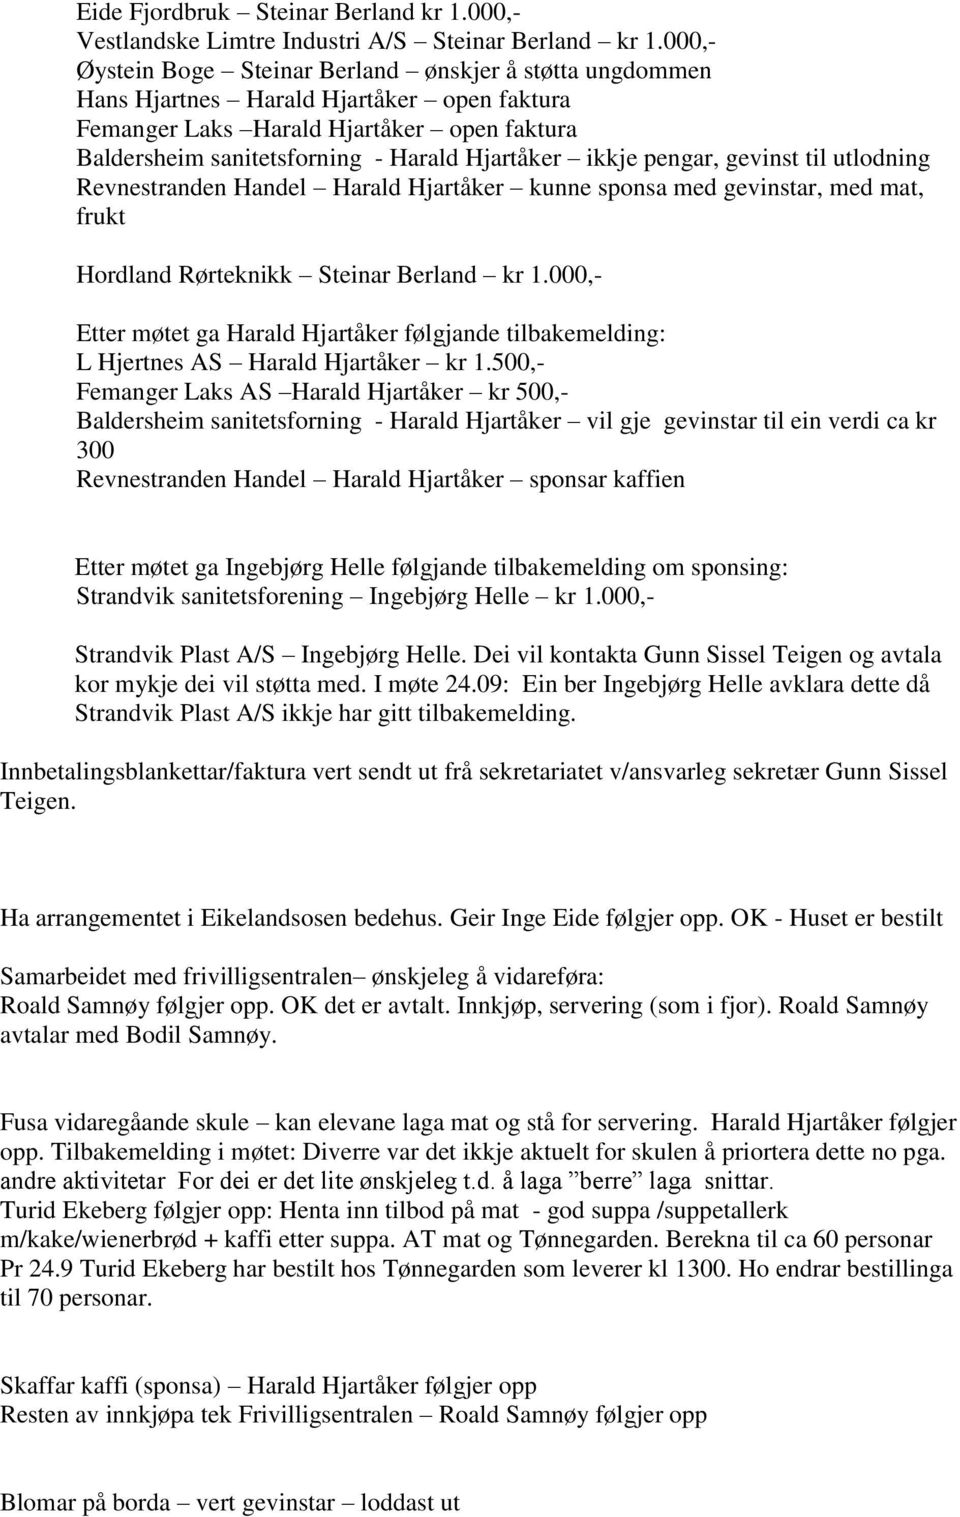 ikkje pengar, gevinst til utlodning Revnestranden Handel Harald Hjartåker kunne sponsa med gevinstar, med mat, frukt Hordland Rørteknikk Steinar Berland kr 1.